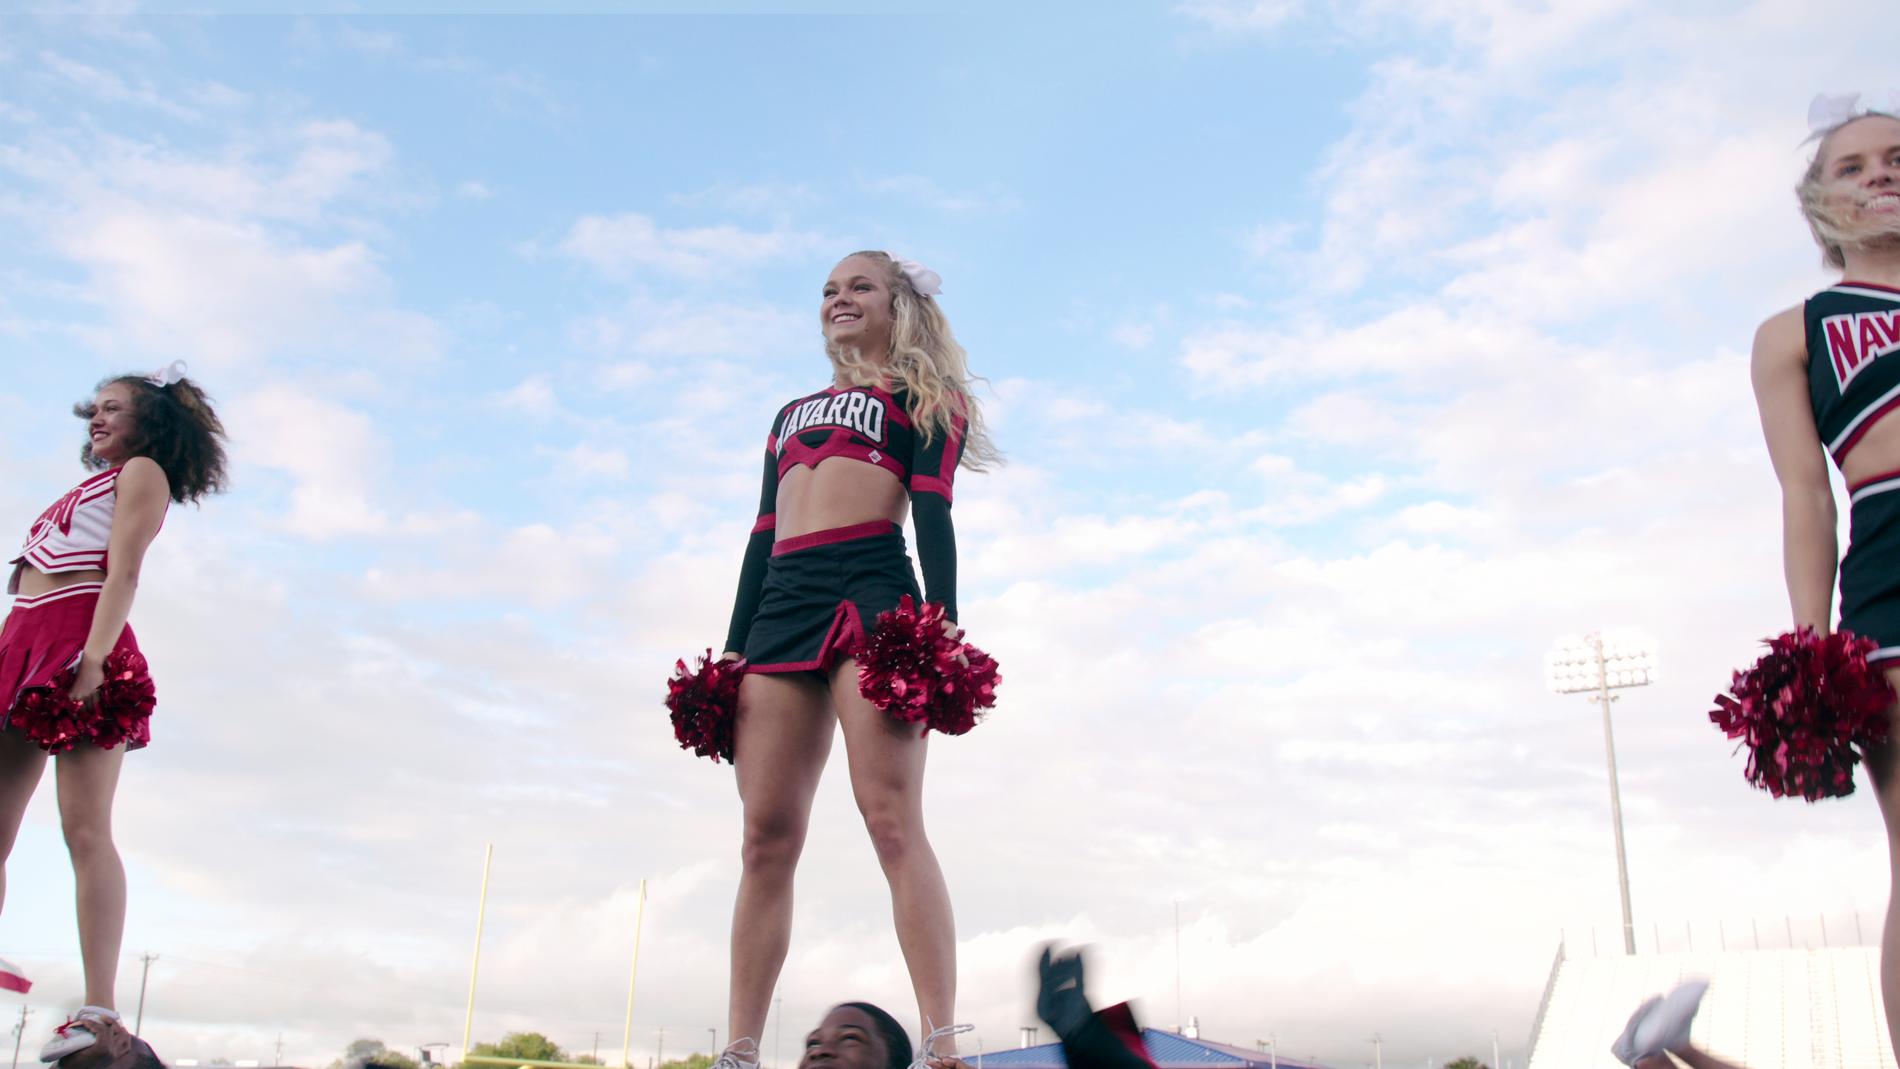 Dokumentärserien ”Cheer” följer en grupp cheerleaders.